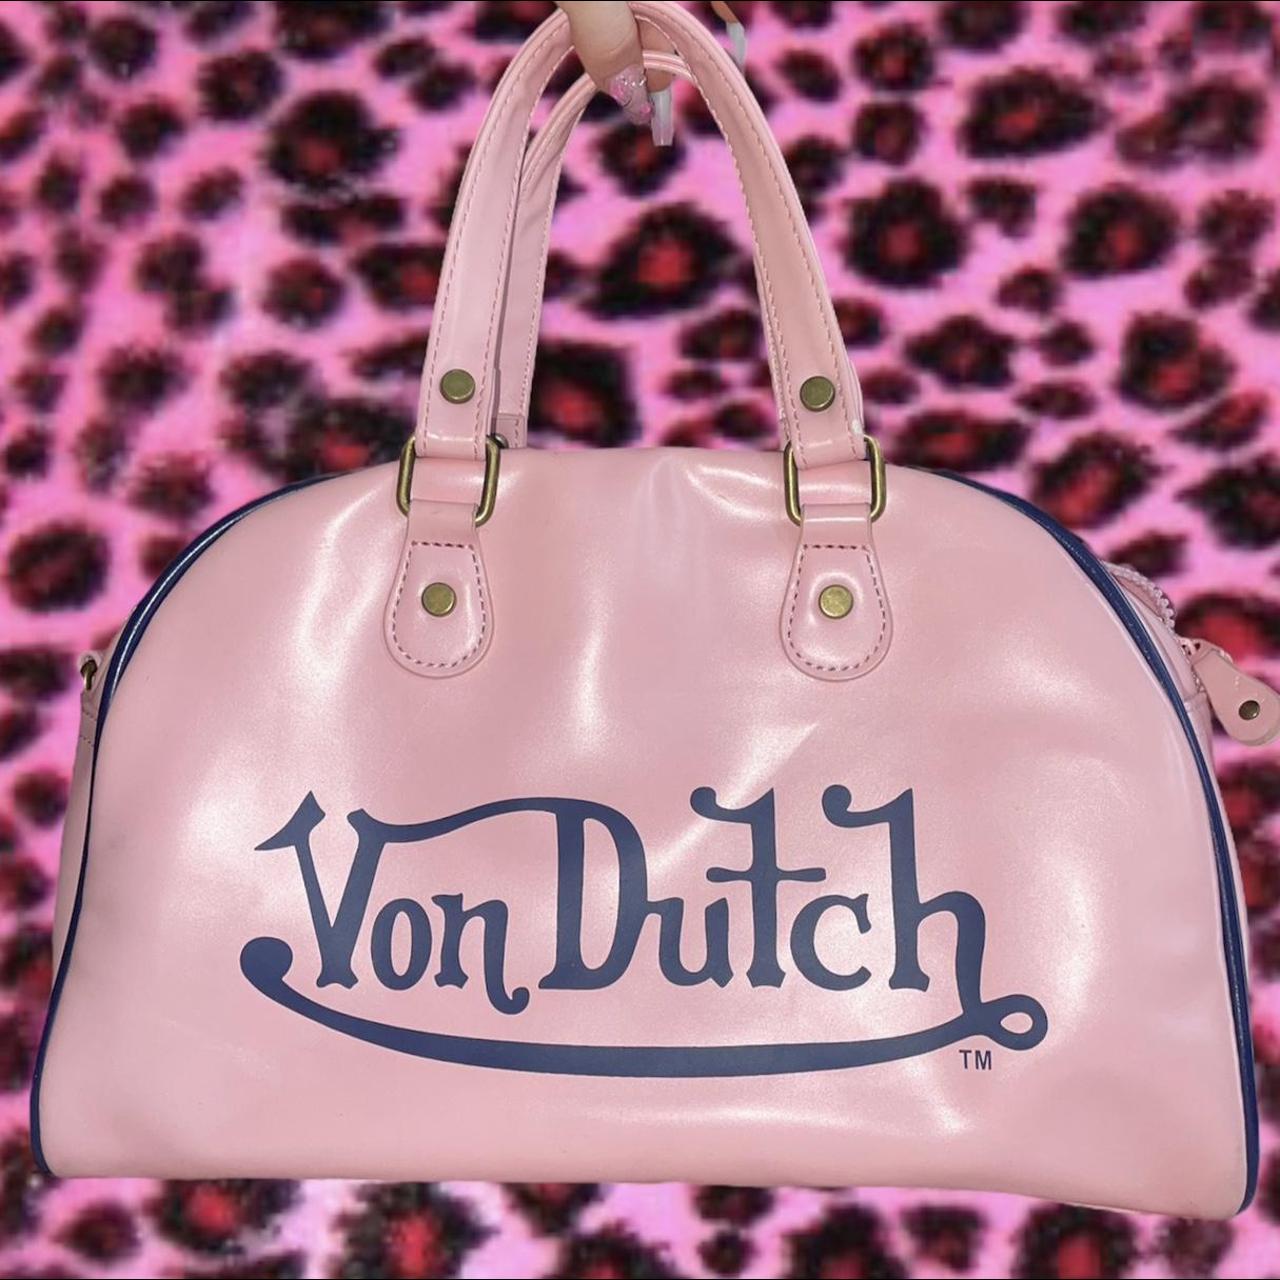 Von Dutch Women's Bag | Depop